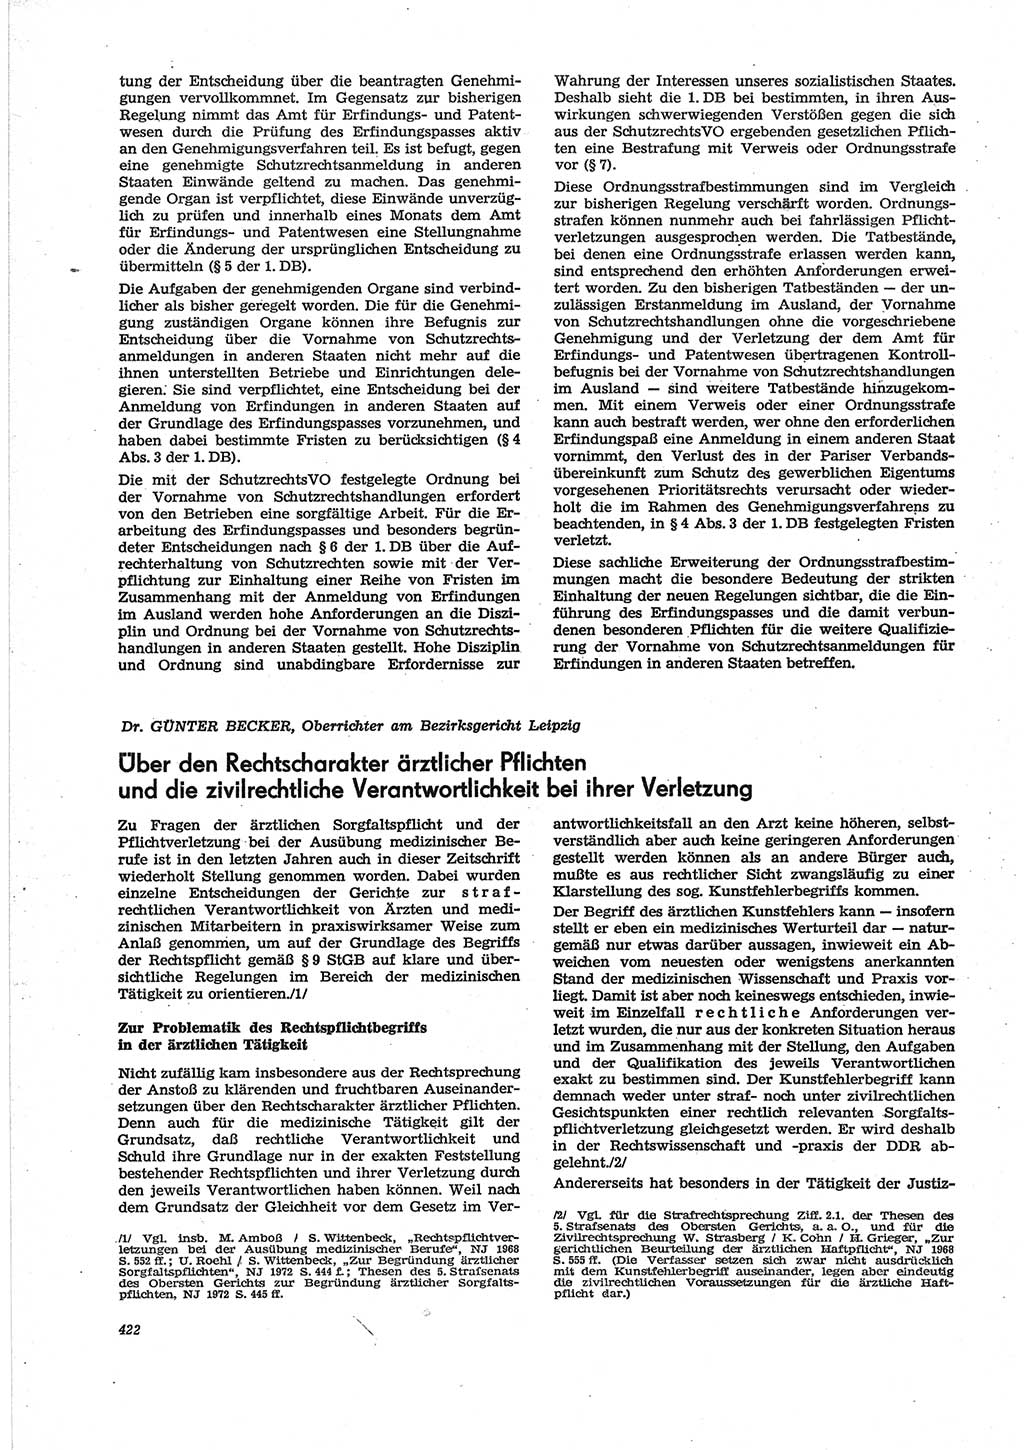 Neue Justiz (NJ), Zeitschrift für Recht und Rechtswissenschaft [Deutsche Demokratische Republik (DDR)], 28. Jahrgang 1974, Seite 422 (NJ DDR 1974, S. 422)